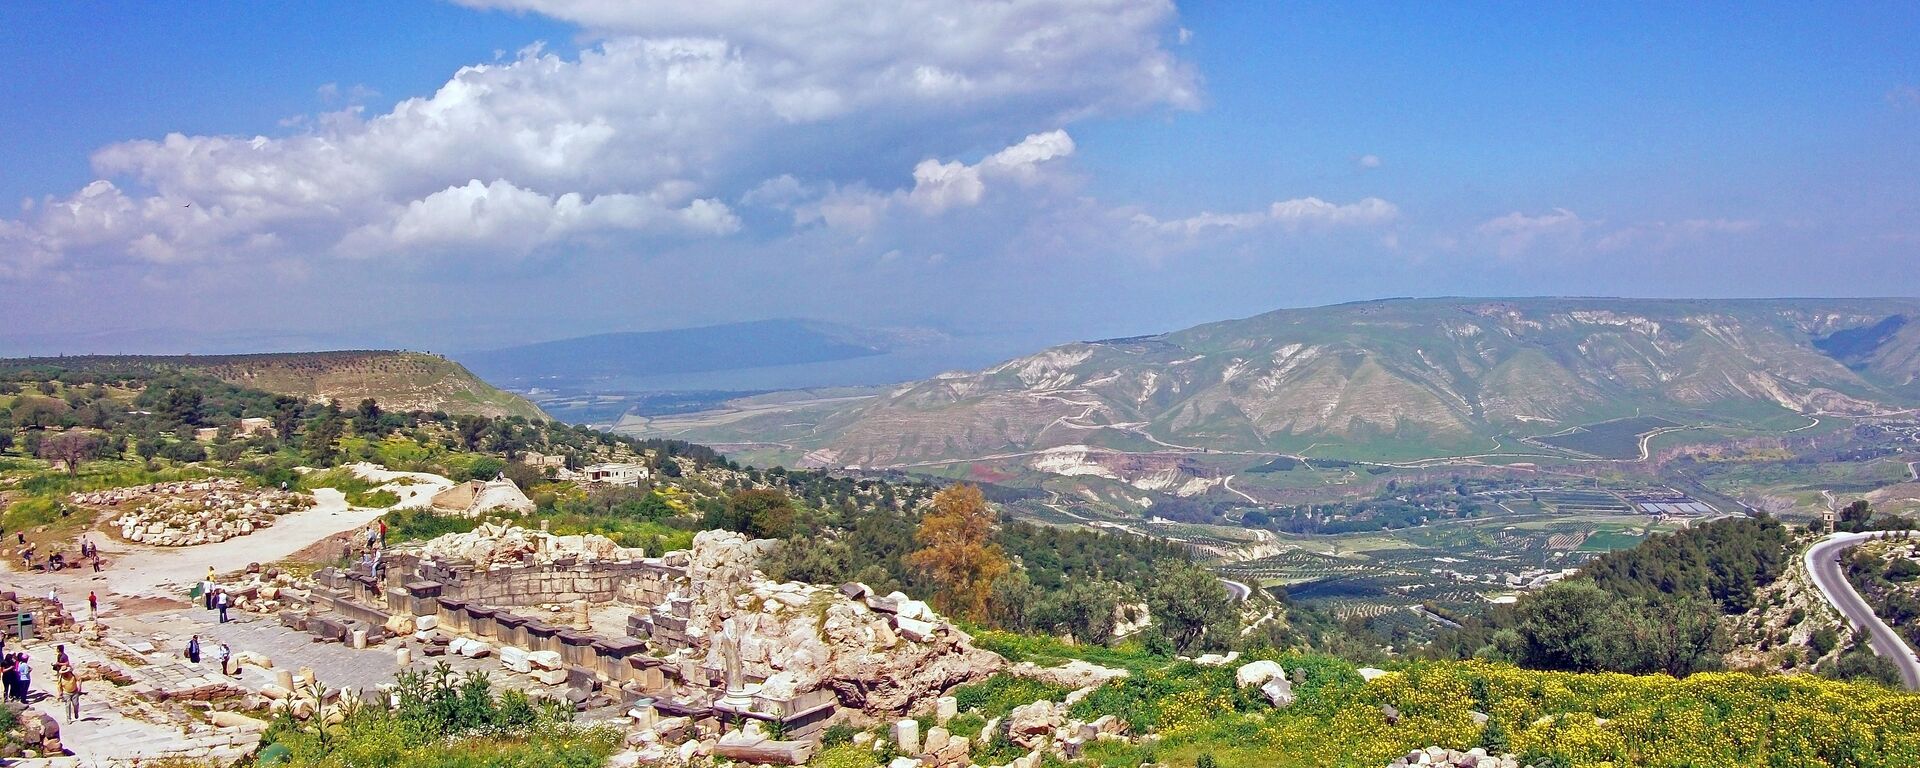 Una vista que se abre a los Altos del Golán desde las ruinas de una antigua ciudad situadas en Umm Qais (Jordania) - Sputnik Mundo, 1920, 25.03.2019